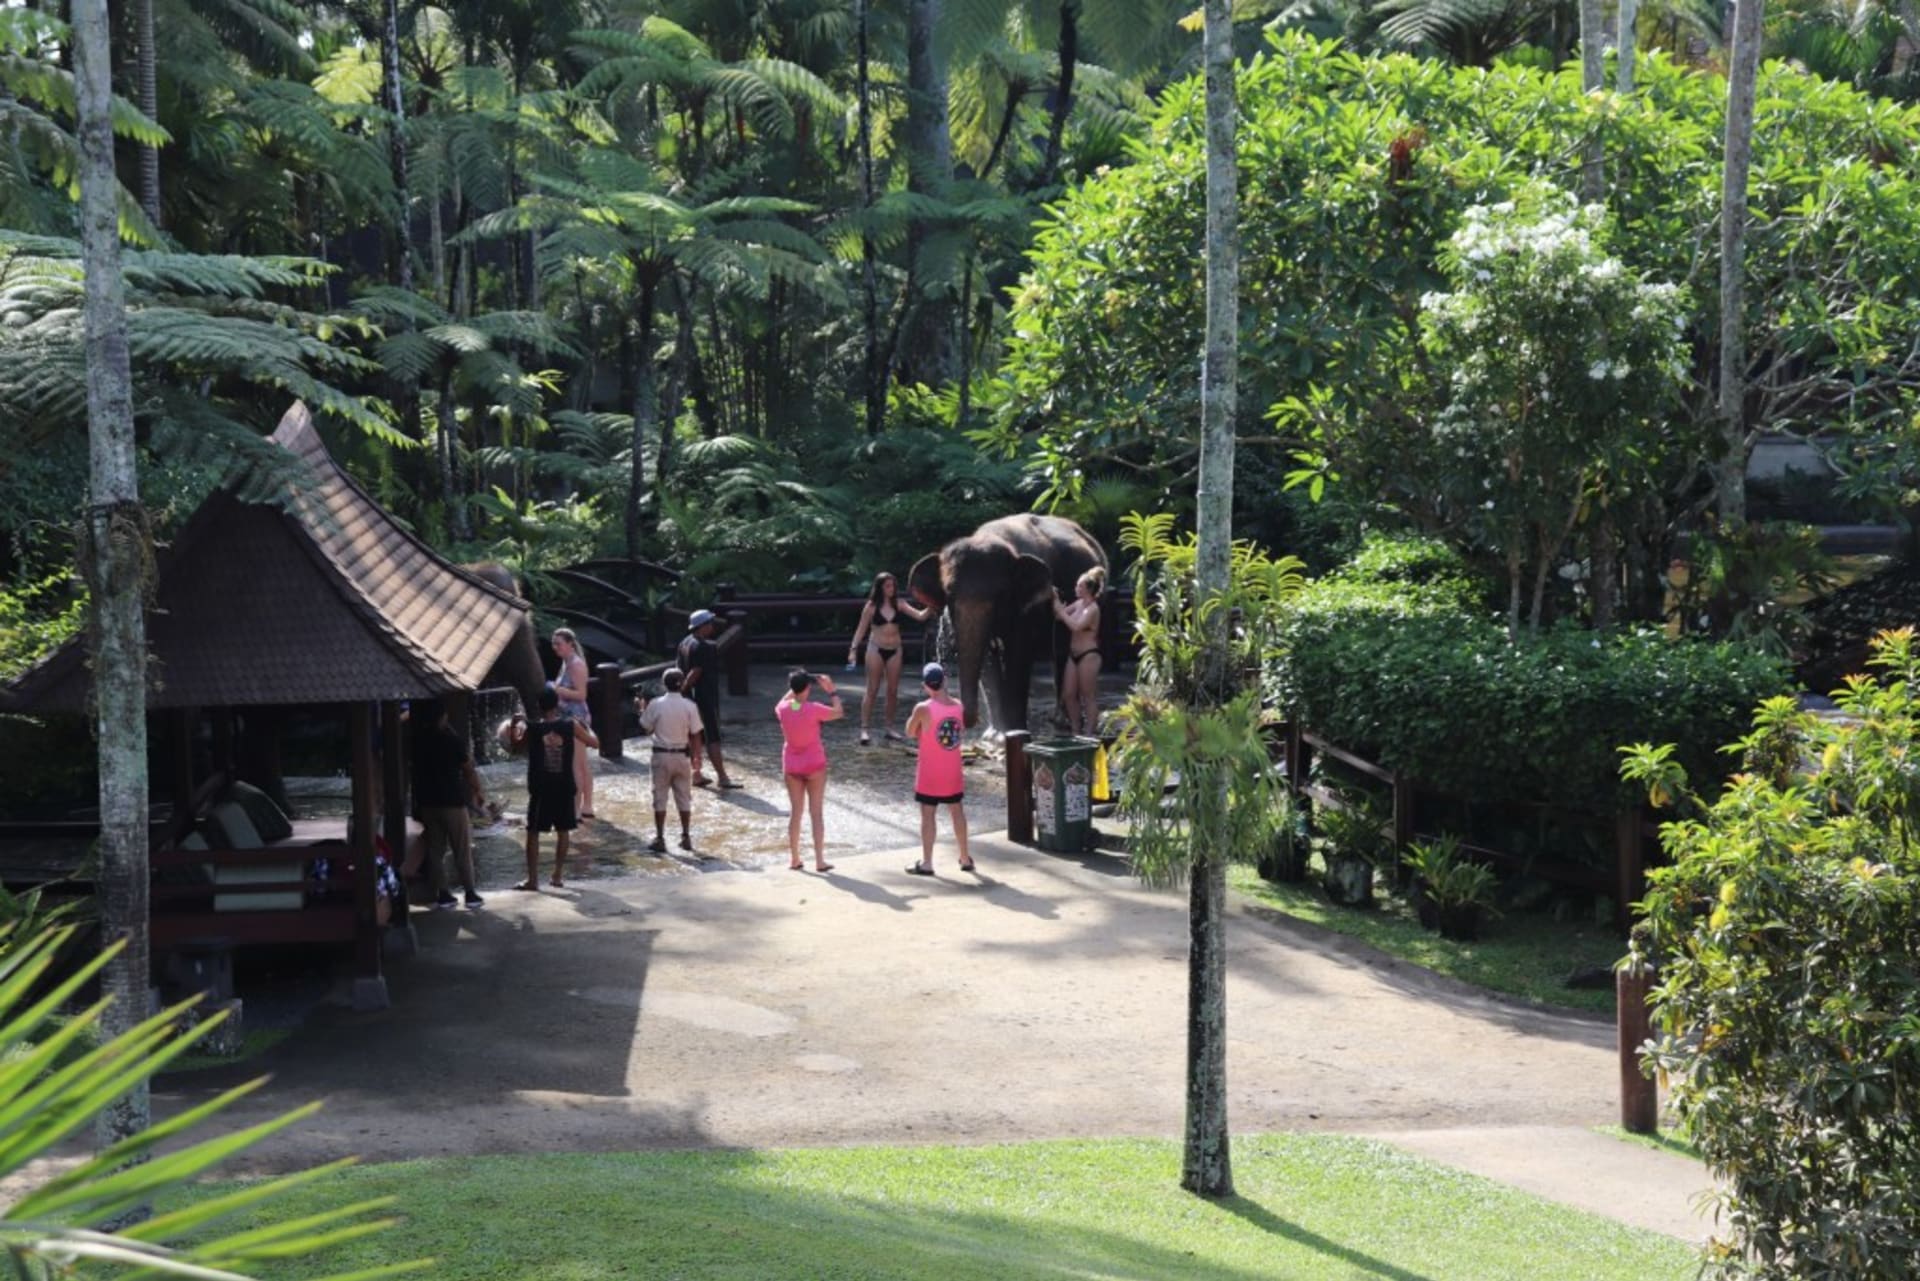 Sloni jsou nuceni snášet přítomnost a doteky turistů, i když nechtějí. Zdroj: Lady Freethinker